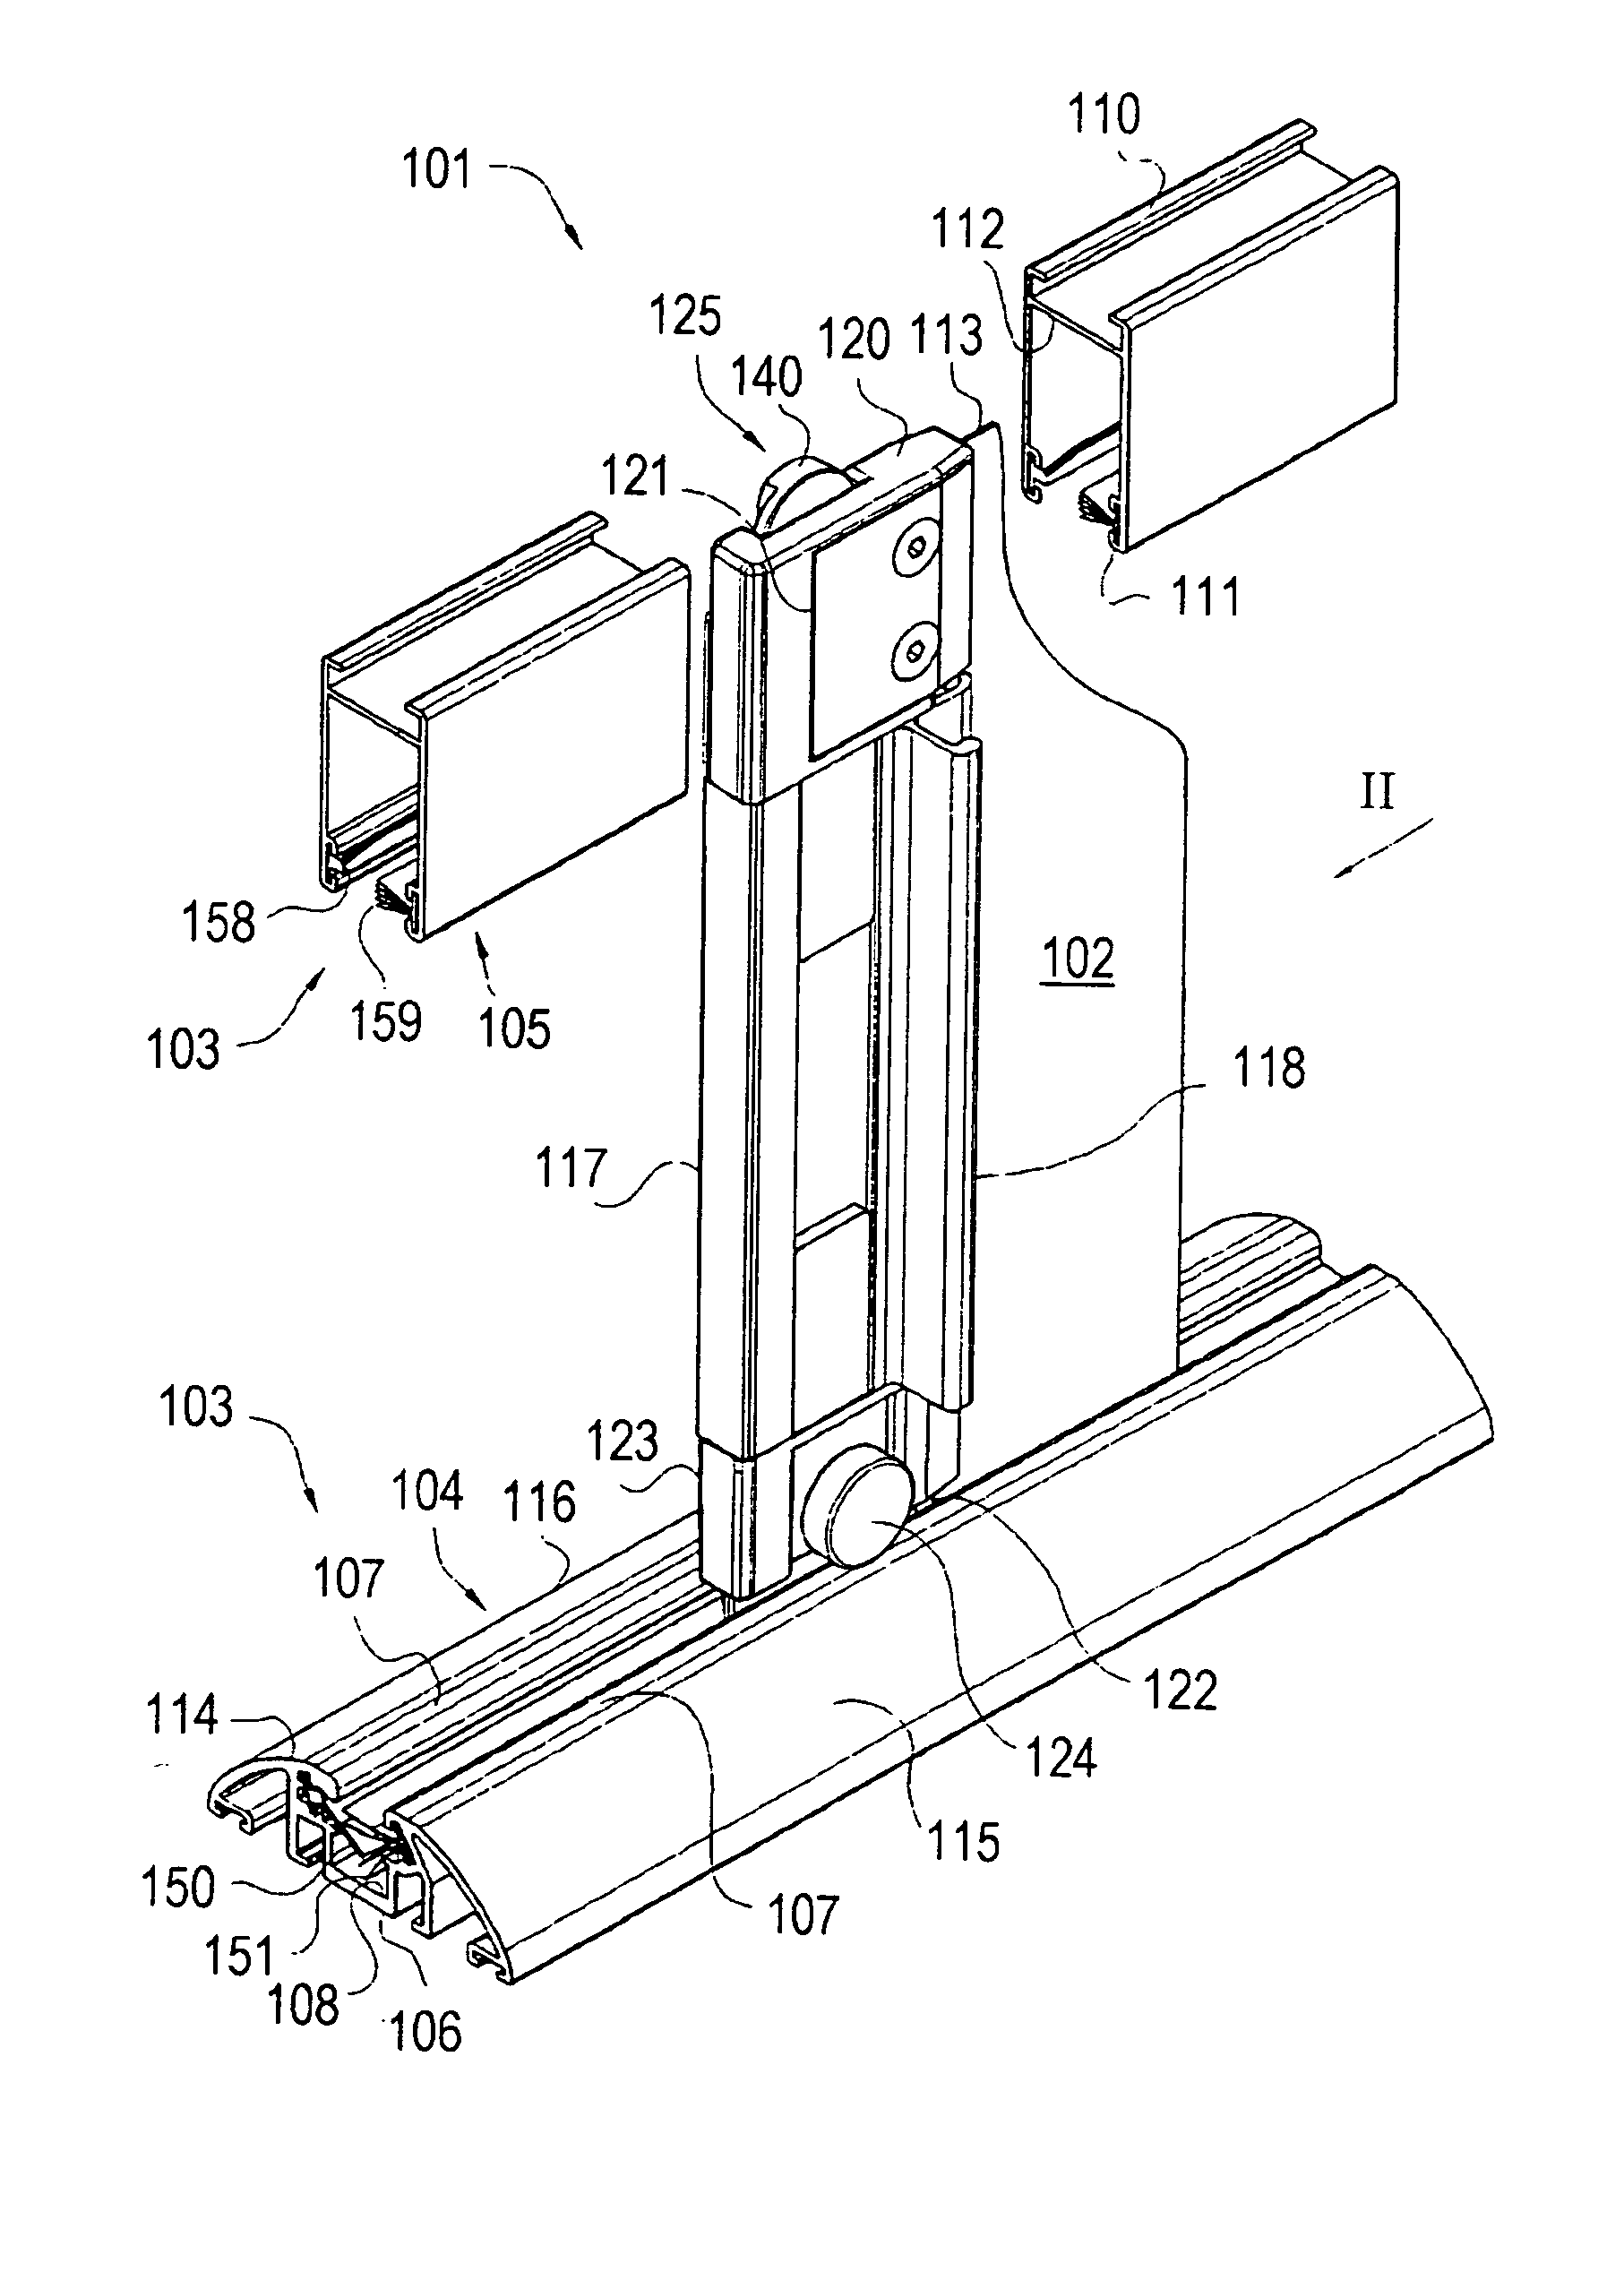 Flexible-screen apparatus